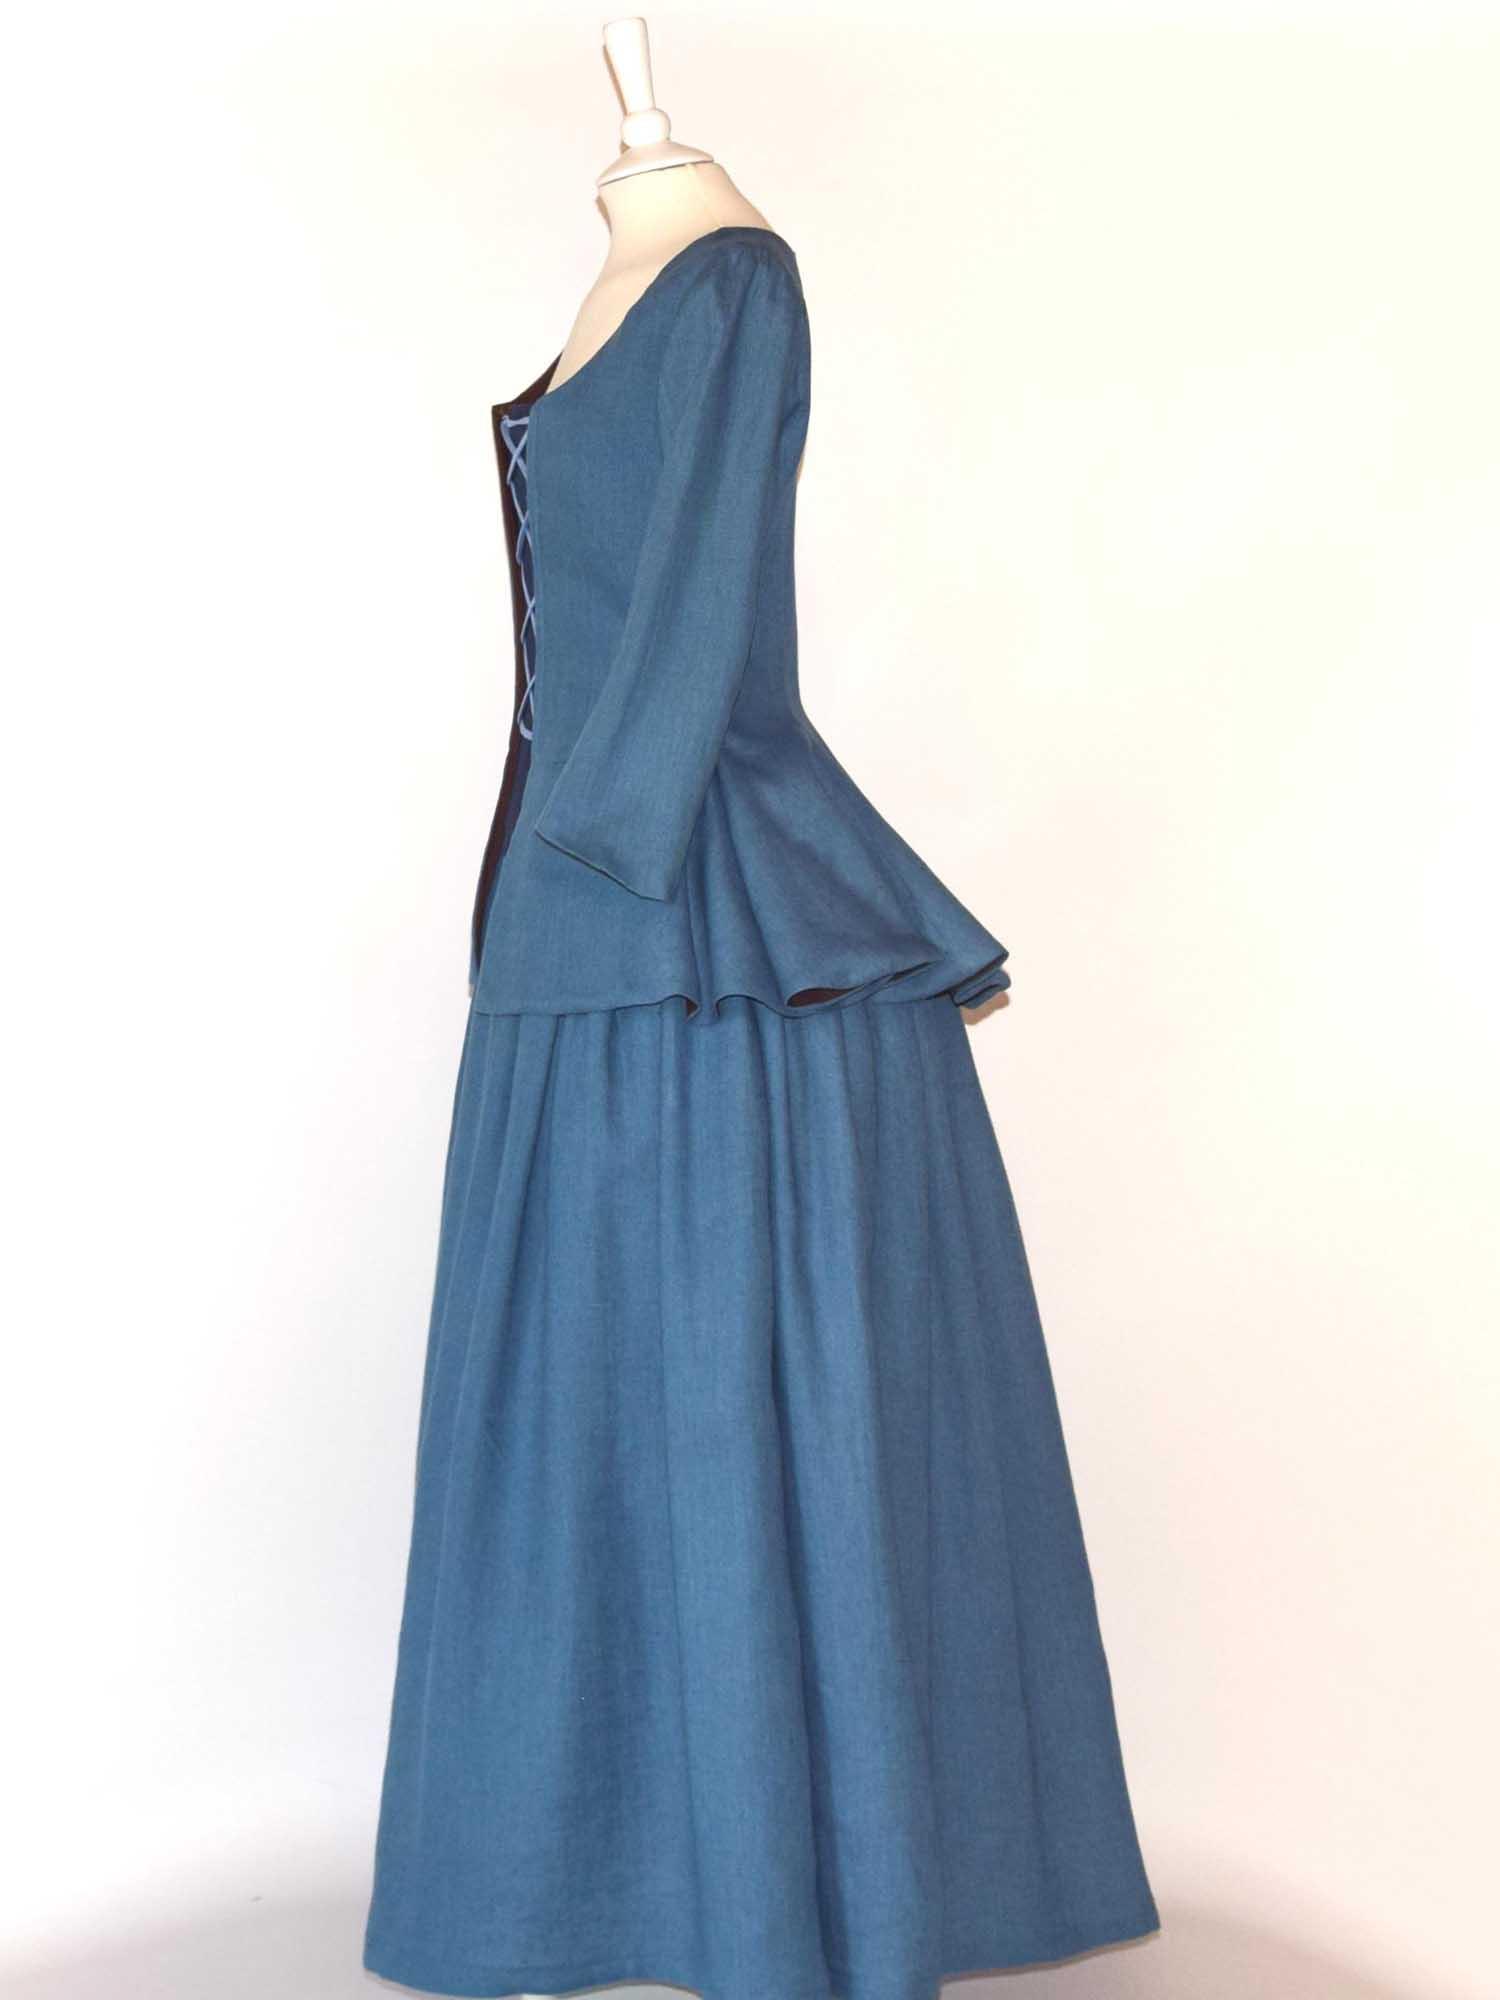 JANET, Colonial Costume in Steel Blue Linen - Atelier Serraspina